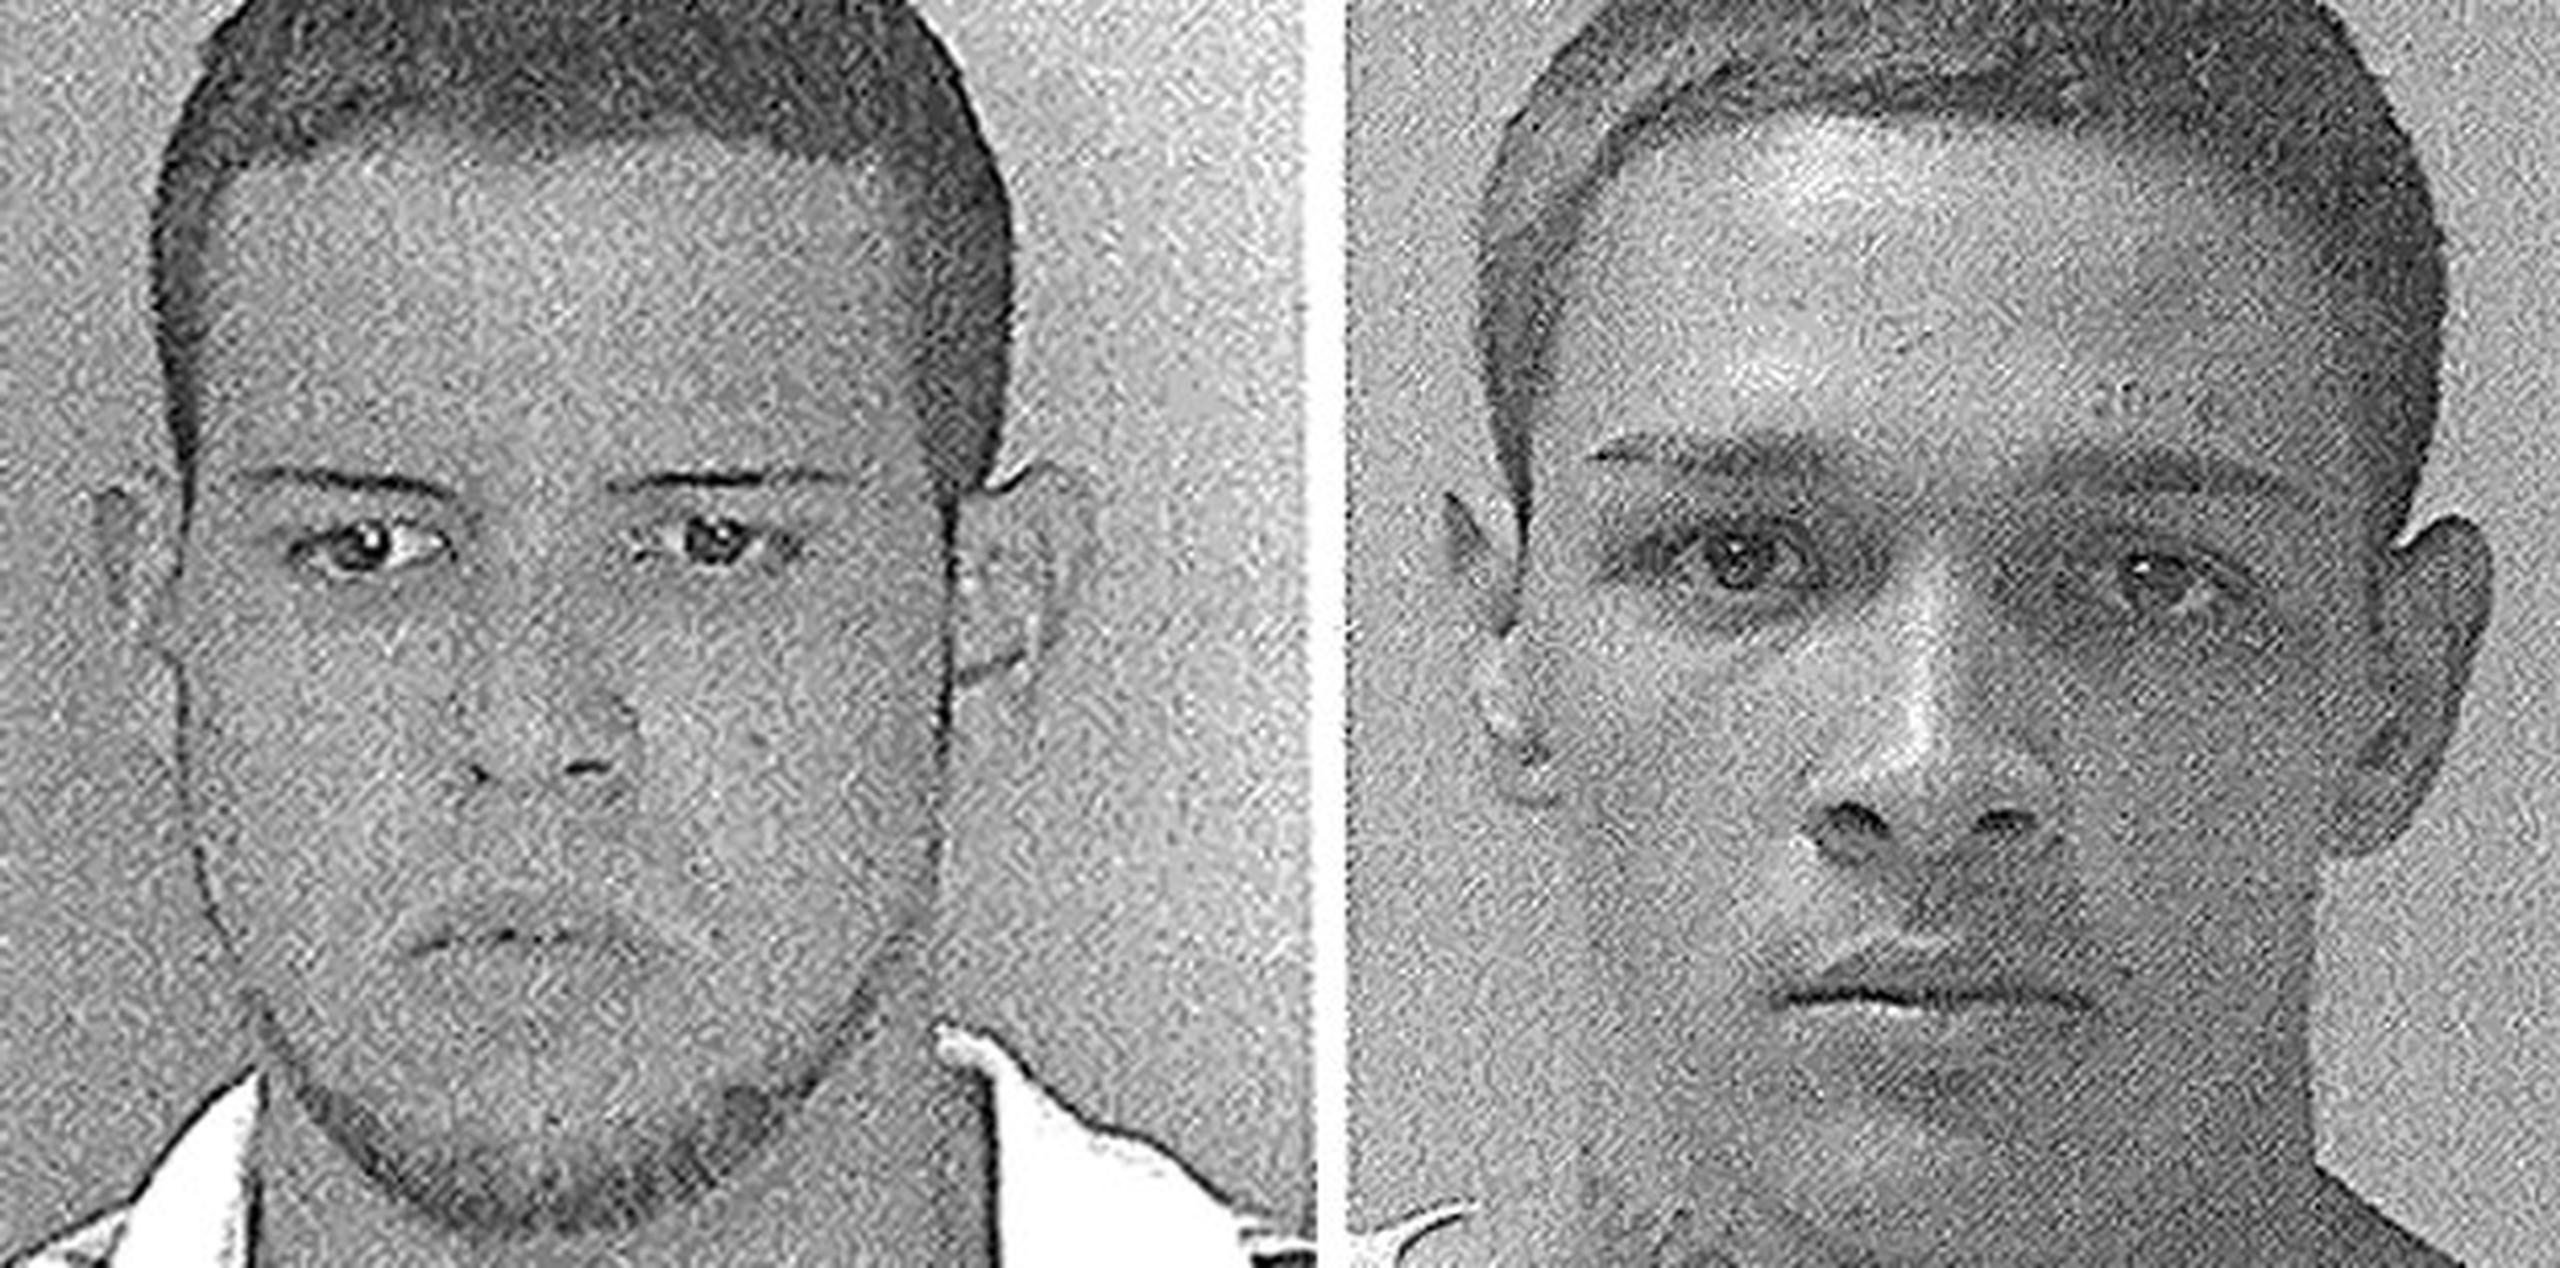 Contra Natanael “Nata” Pérez Lugo, de 30 años, y José Ortiz Irizarry, de 25 años, pesaban órdenes de arresto por escalamiento, apropiación ilegal grave y daños. (Suministradas)